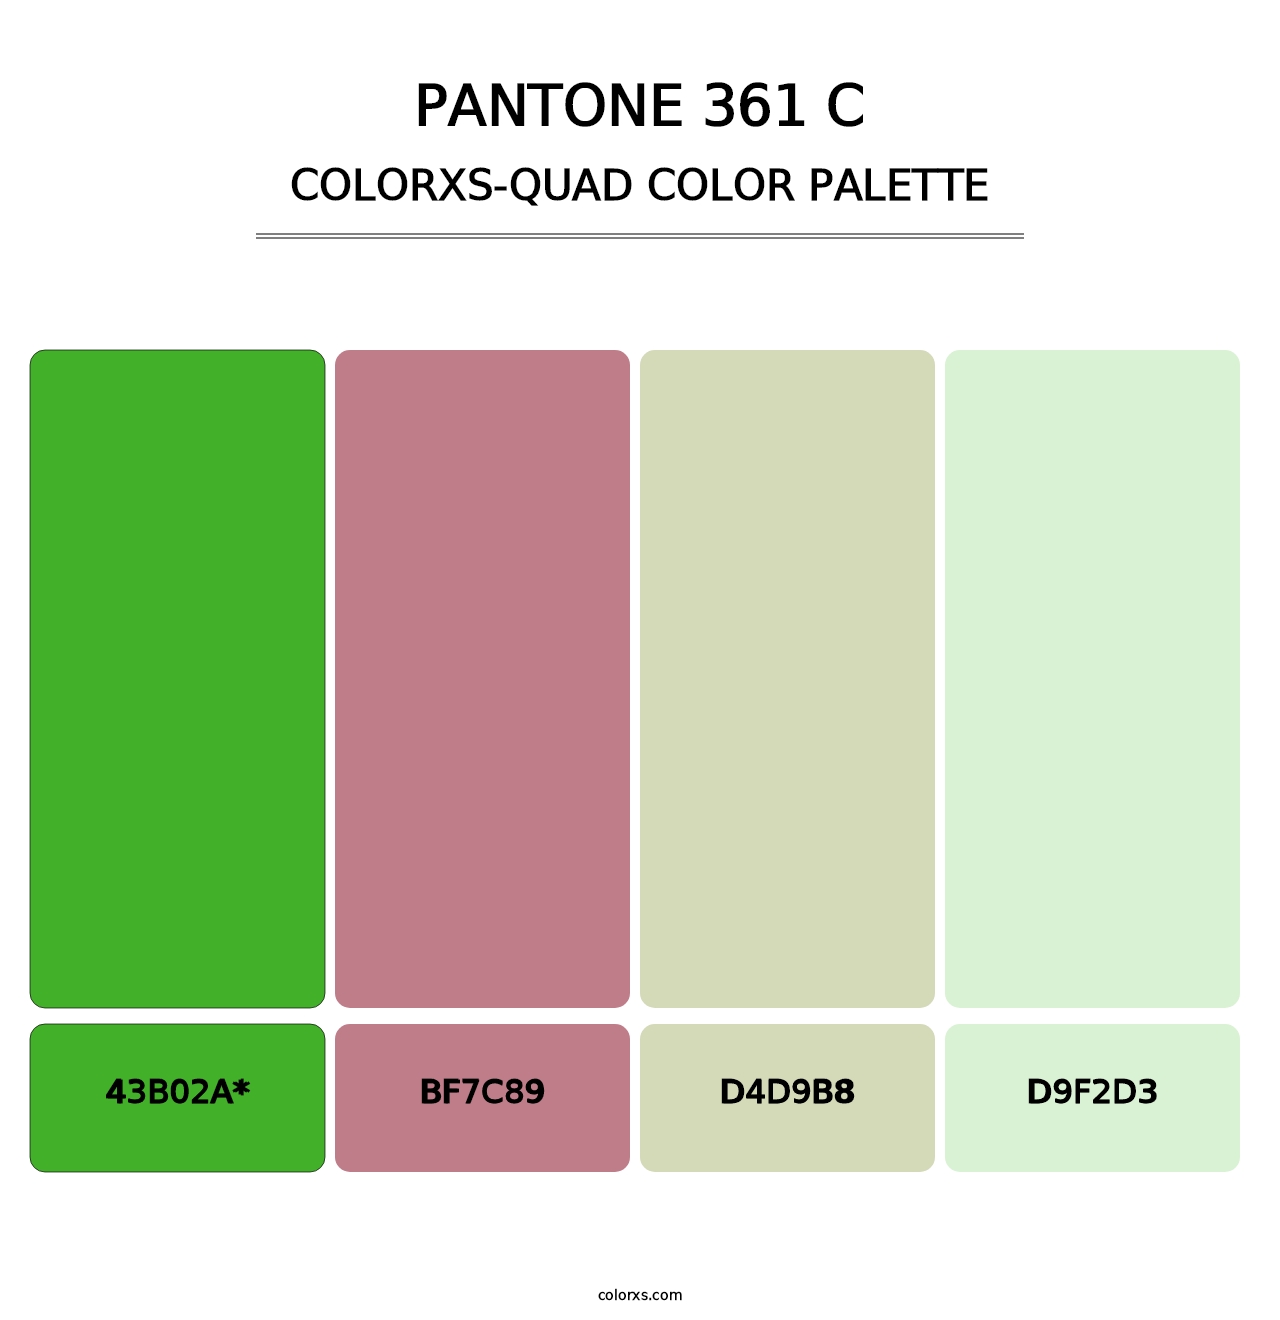 PANTONE 361 C - Colorxs Quad Palette